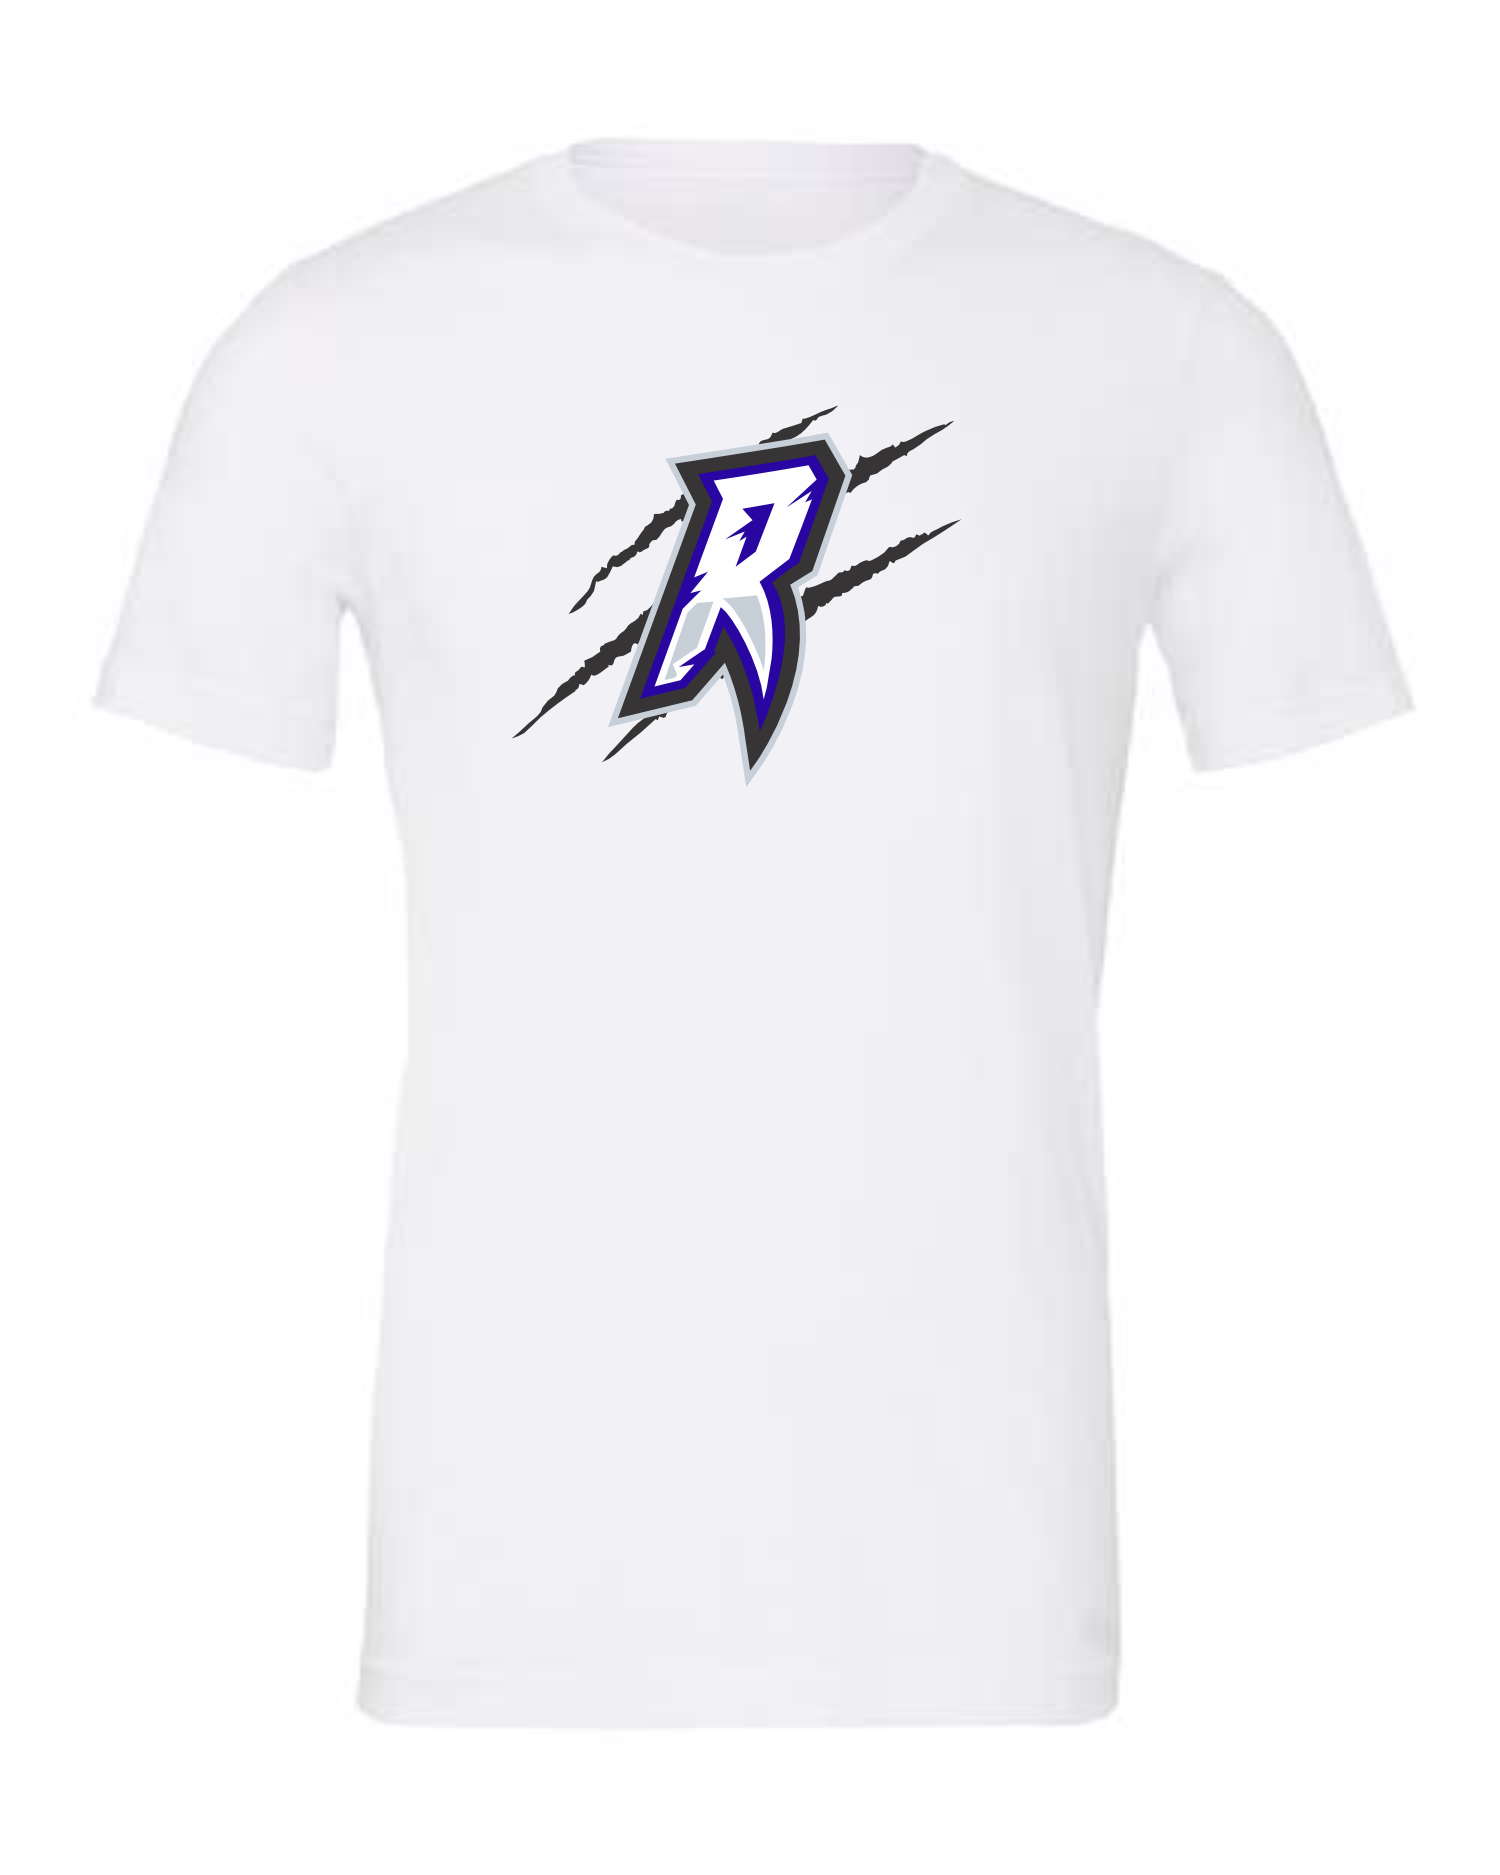 Radnor Raptors Claw T-Shirt